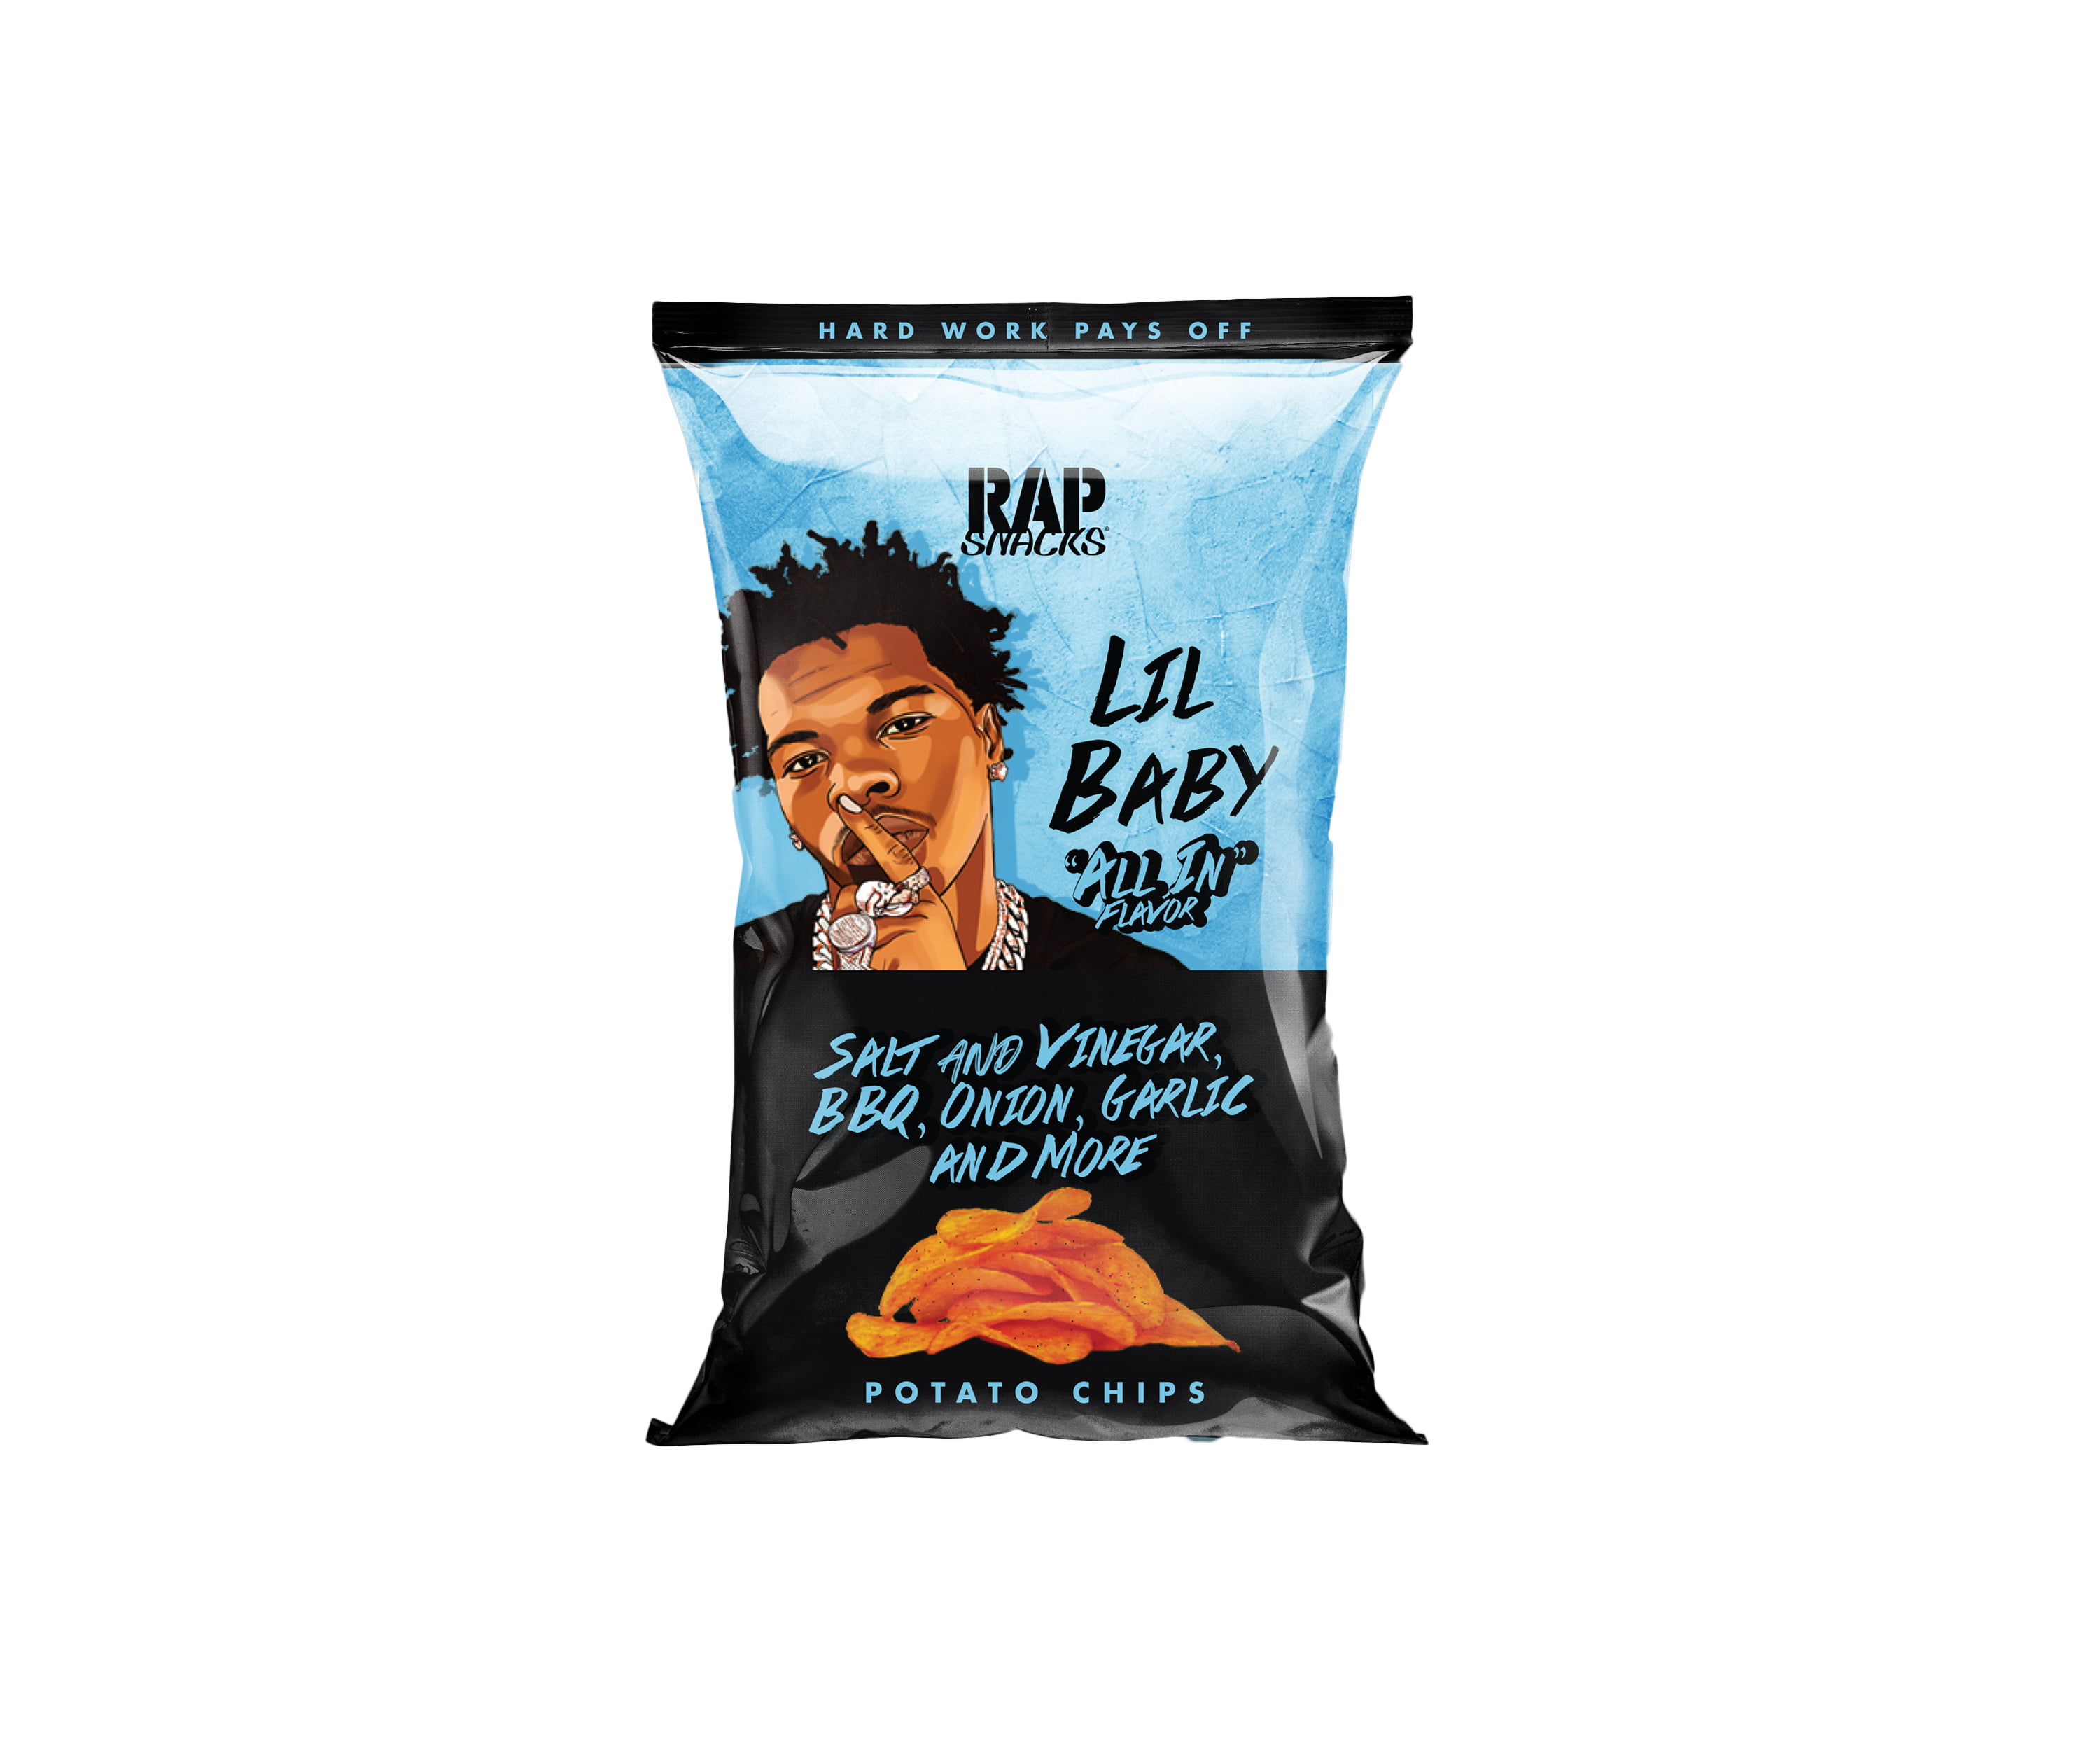 Rap Snacks Lil Baby "All In" Potato Chips, 2.5oz